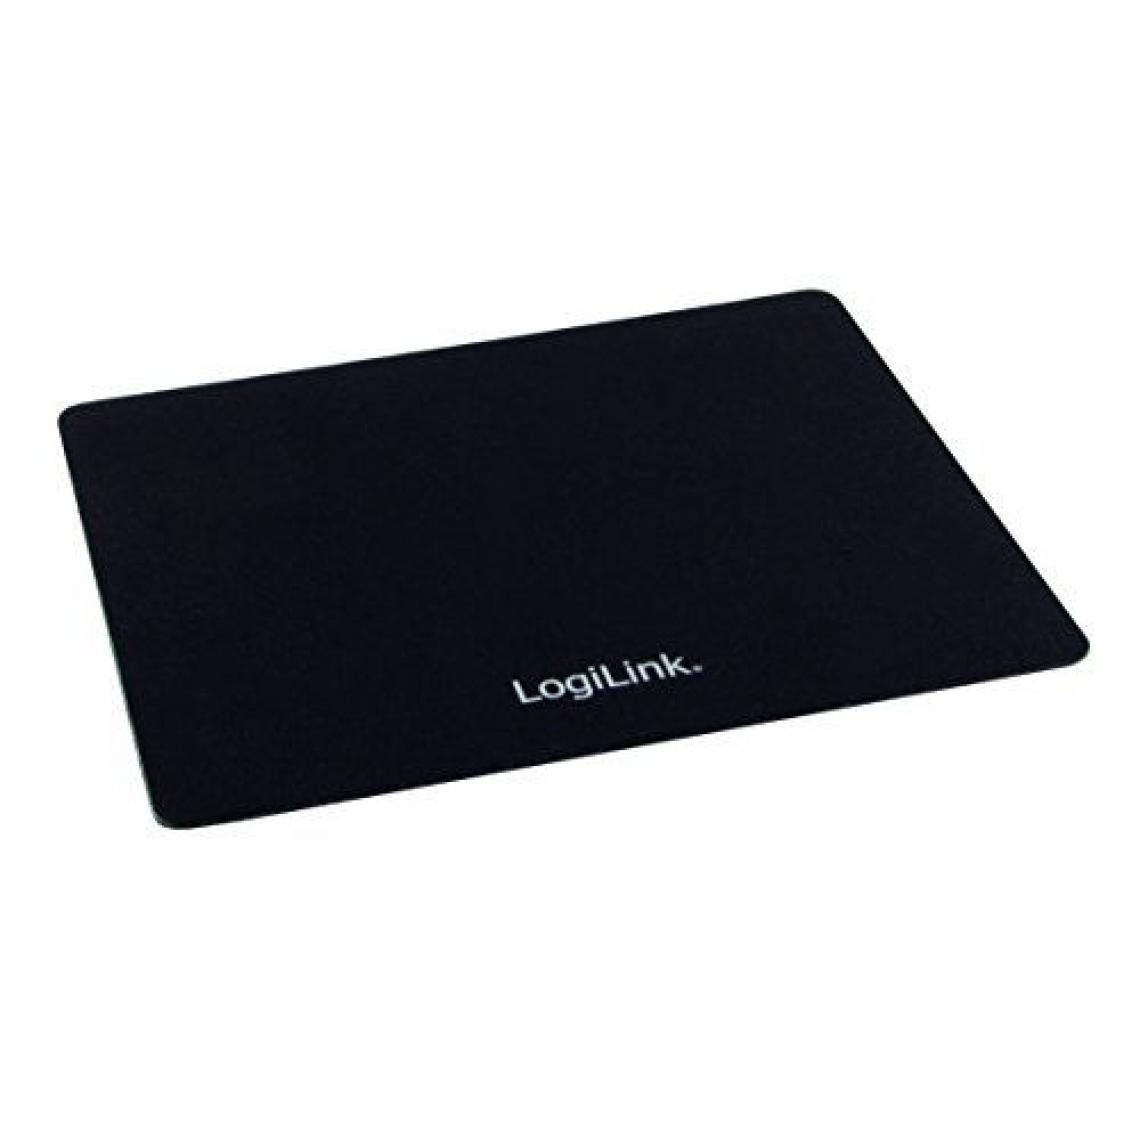 Inconnu - LogiLink ID0149 Noir - tapis de souris (Noir, Monotone, Universel, 230 mm, 190 mm, 2 mm) - Pack Clavier Souris